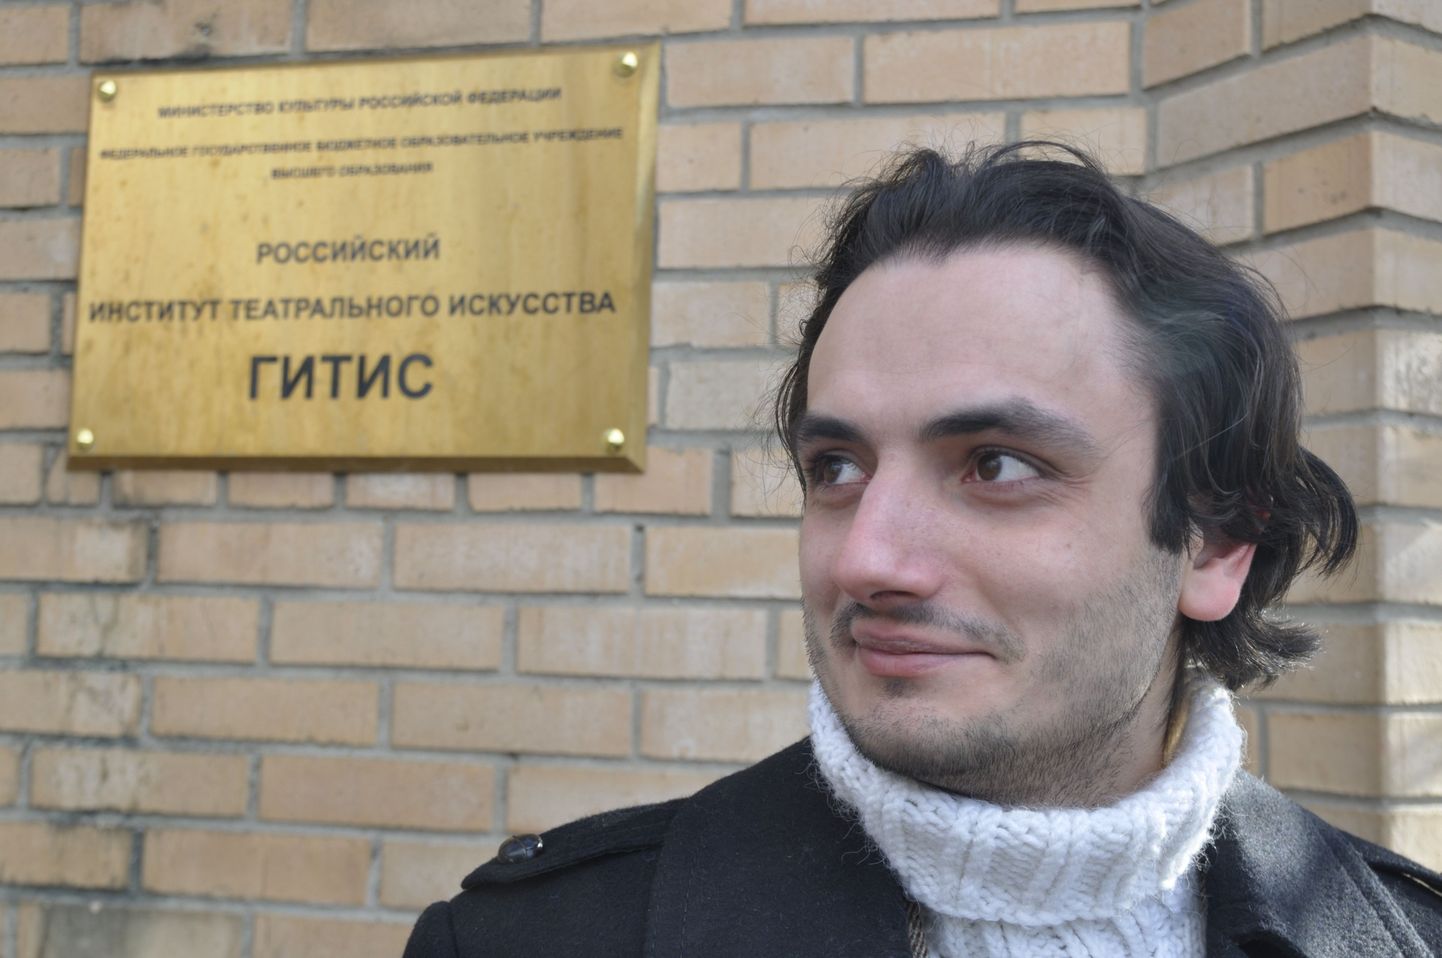 Anton Kiseljus GITISe ees, mis asub Moskvas sisuliselt üle tee Eesti saatkonnast.